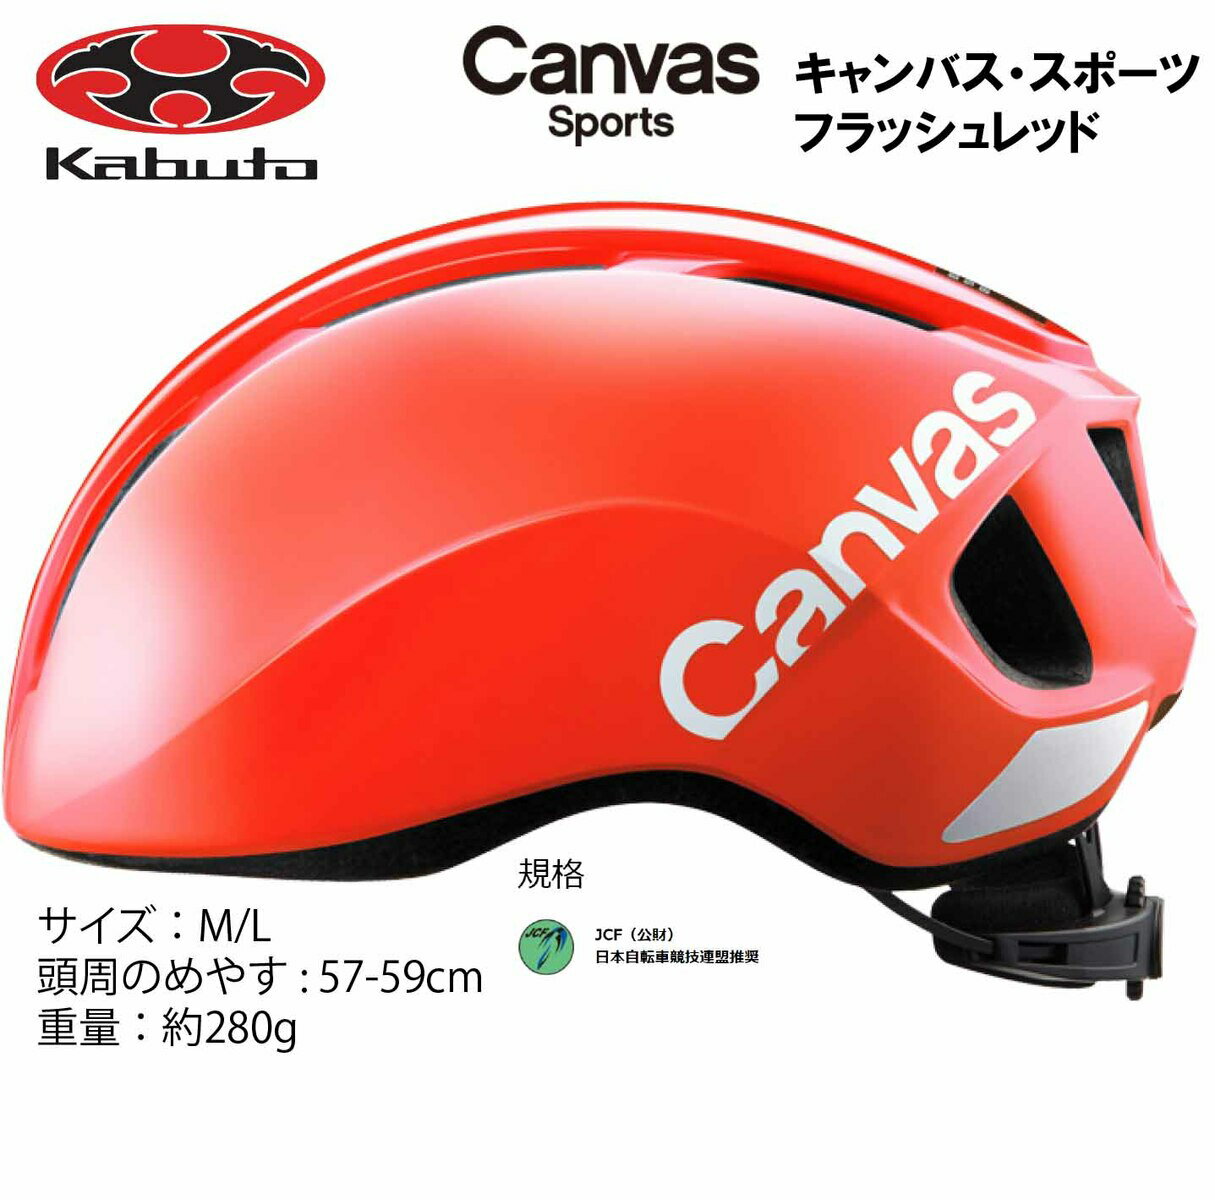 オージーケー カブト OGK KABUTO Canvas Sports キャンバス スポーツ ヘルメット M/L 57〜59cm フラッシュレッド